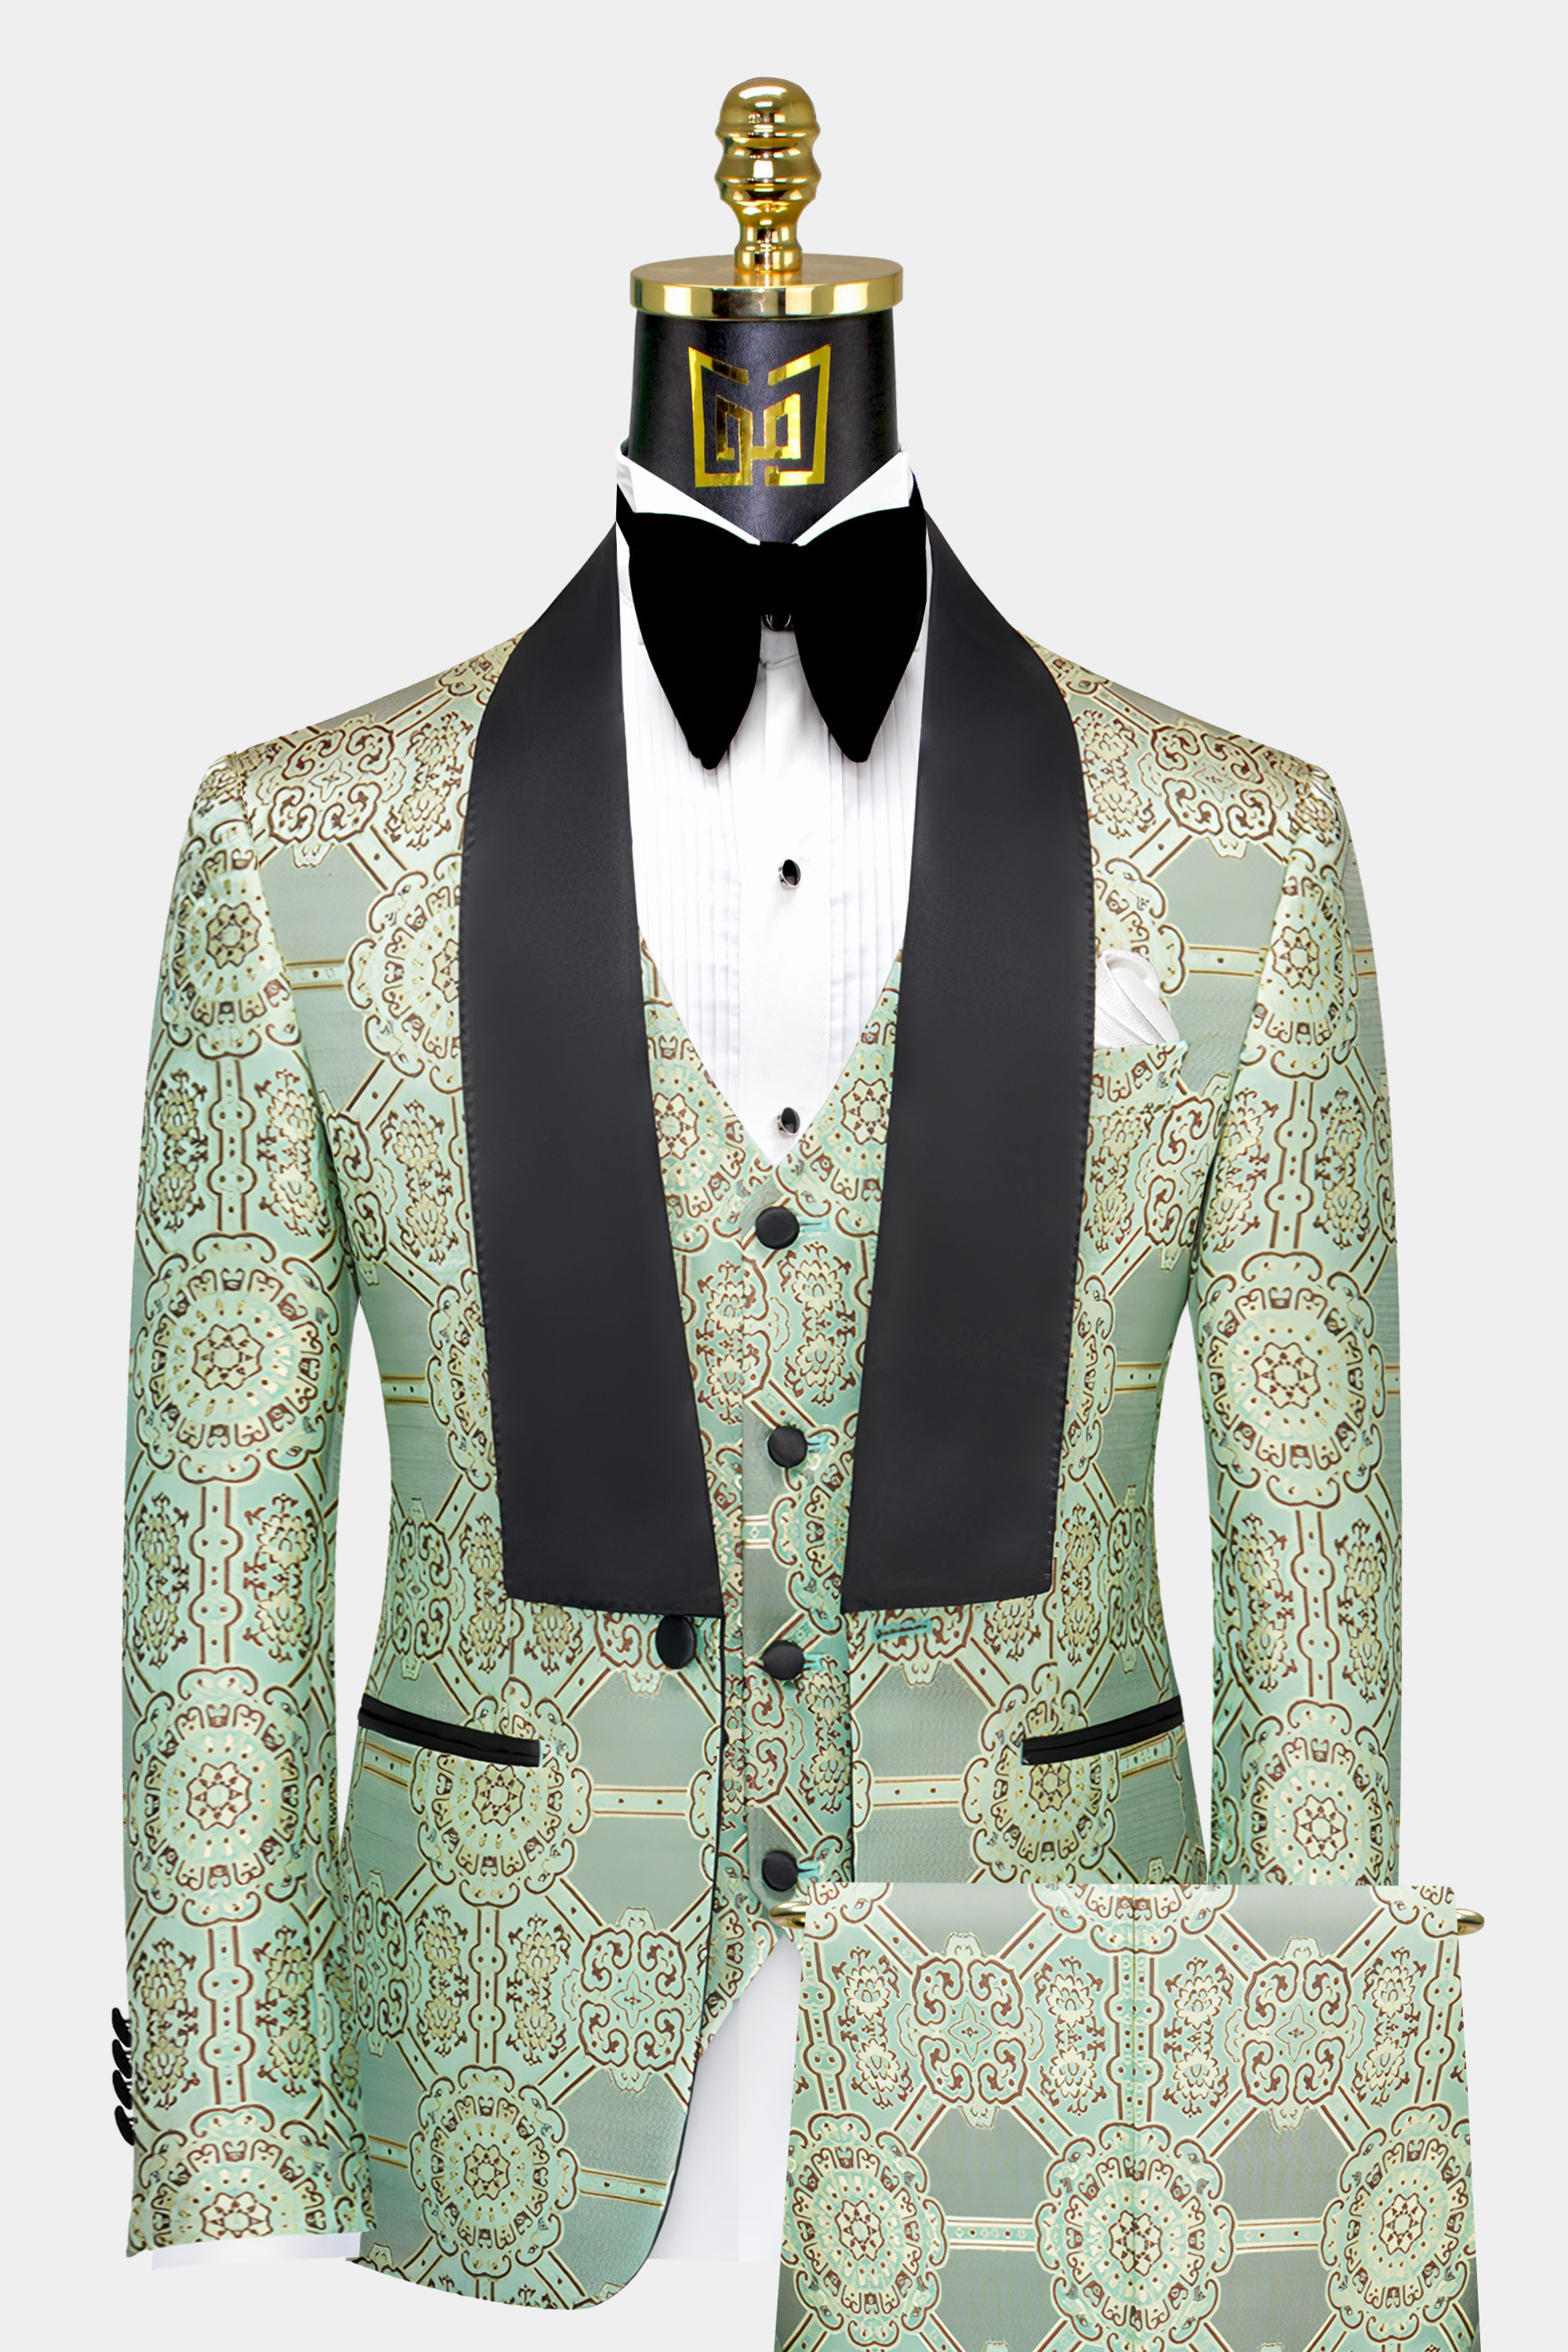 Mens-Mint-Green-Tuxedo-Suit-Groom-Wedding-Prom-Suit-Outfit-from-Gentlemansguru.com